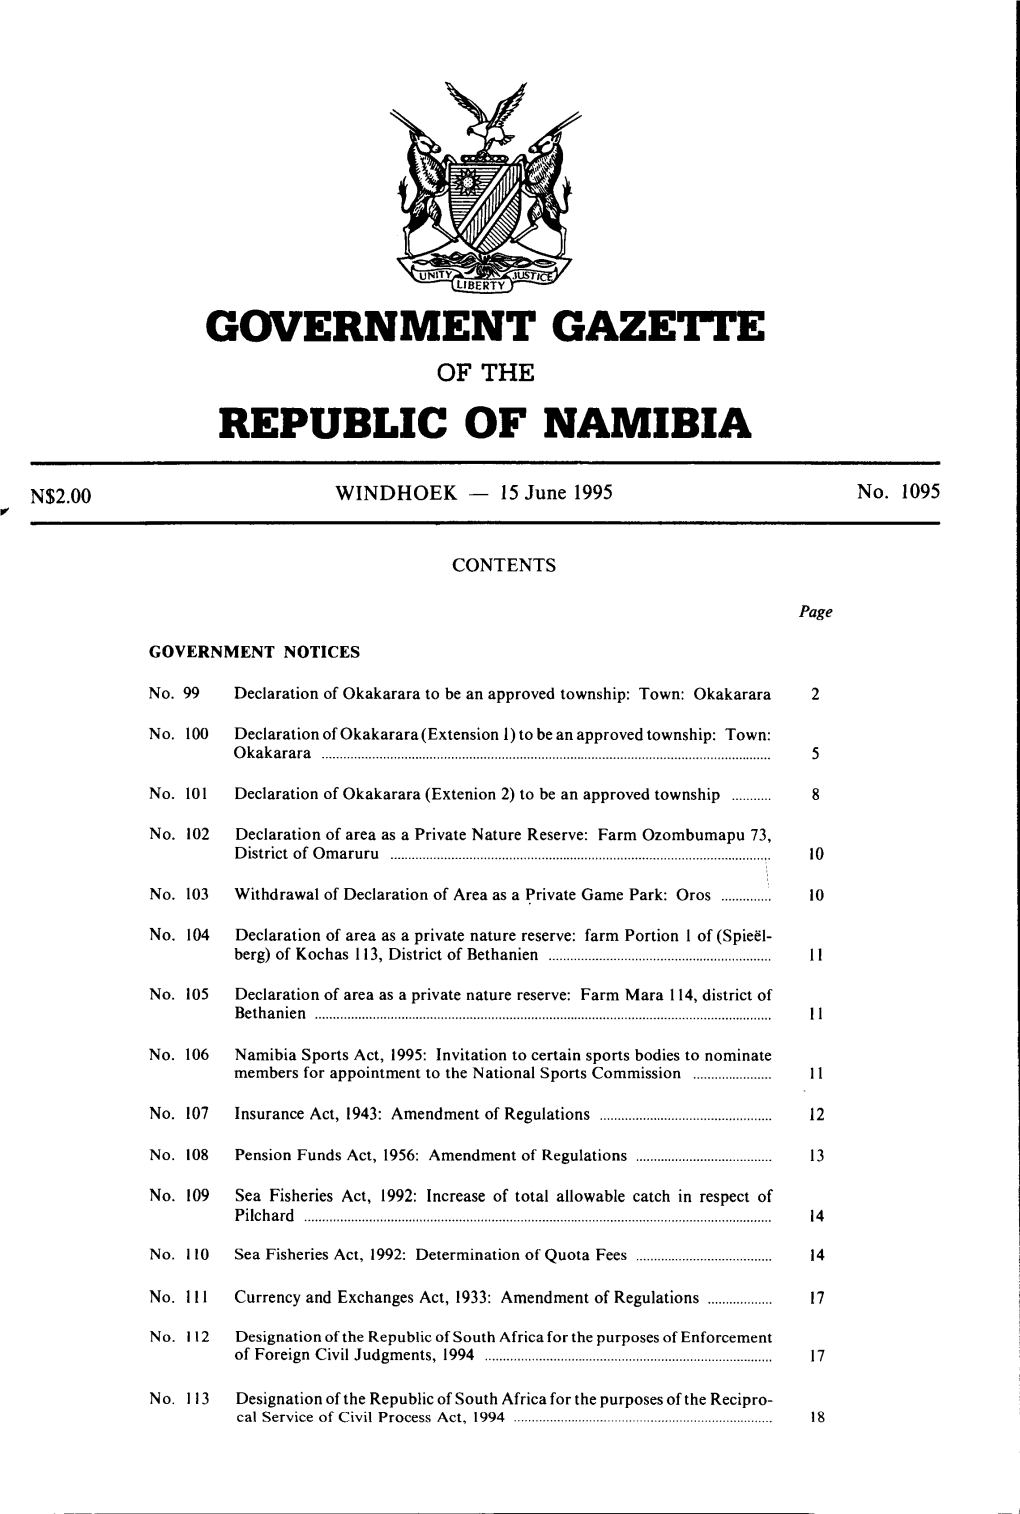 Government Gaze'i.I'e Republic of Namibia